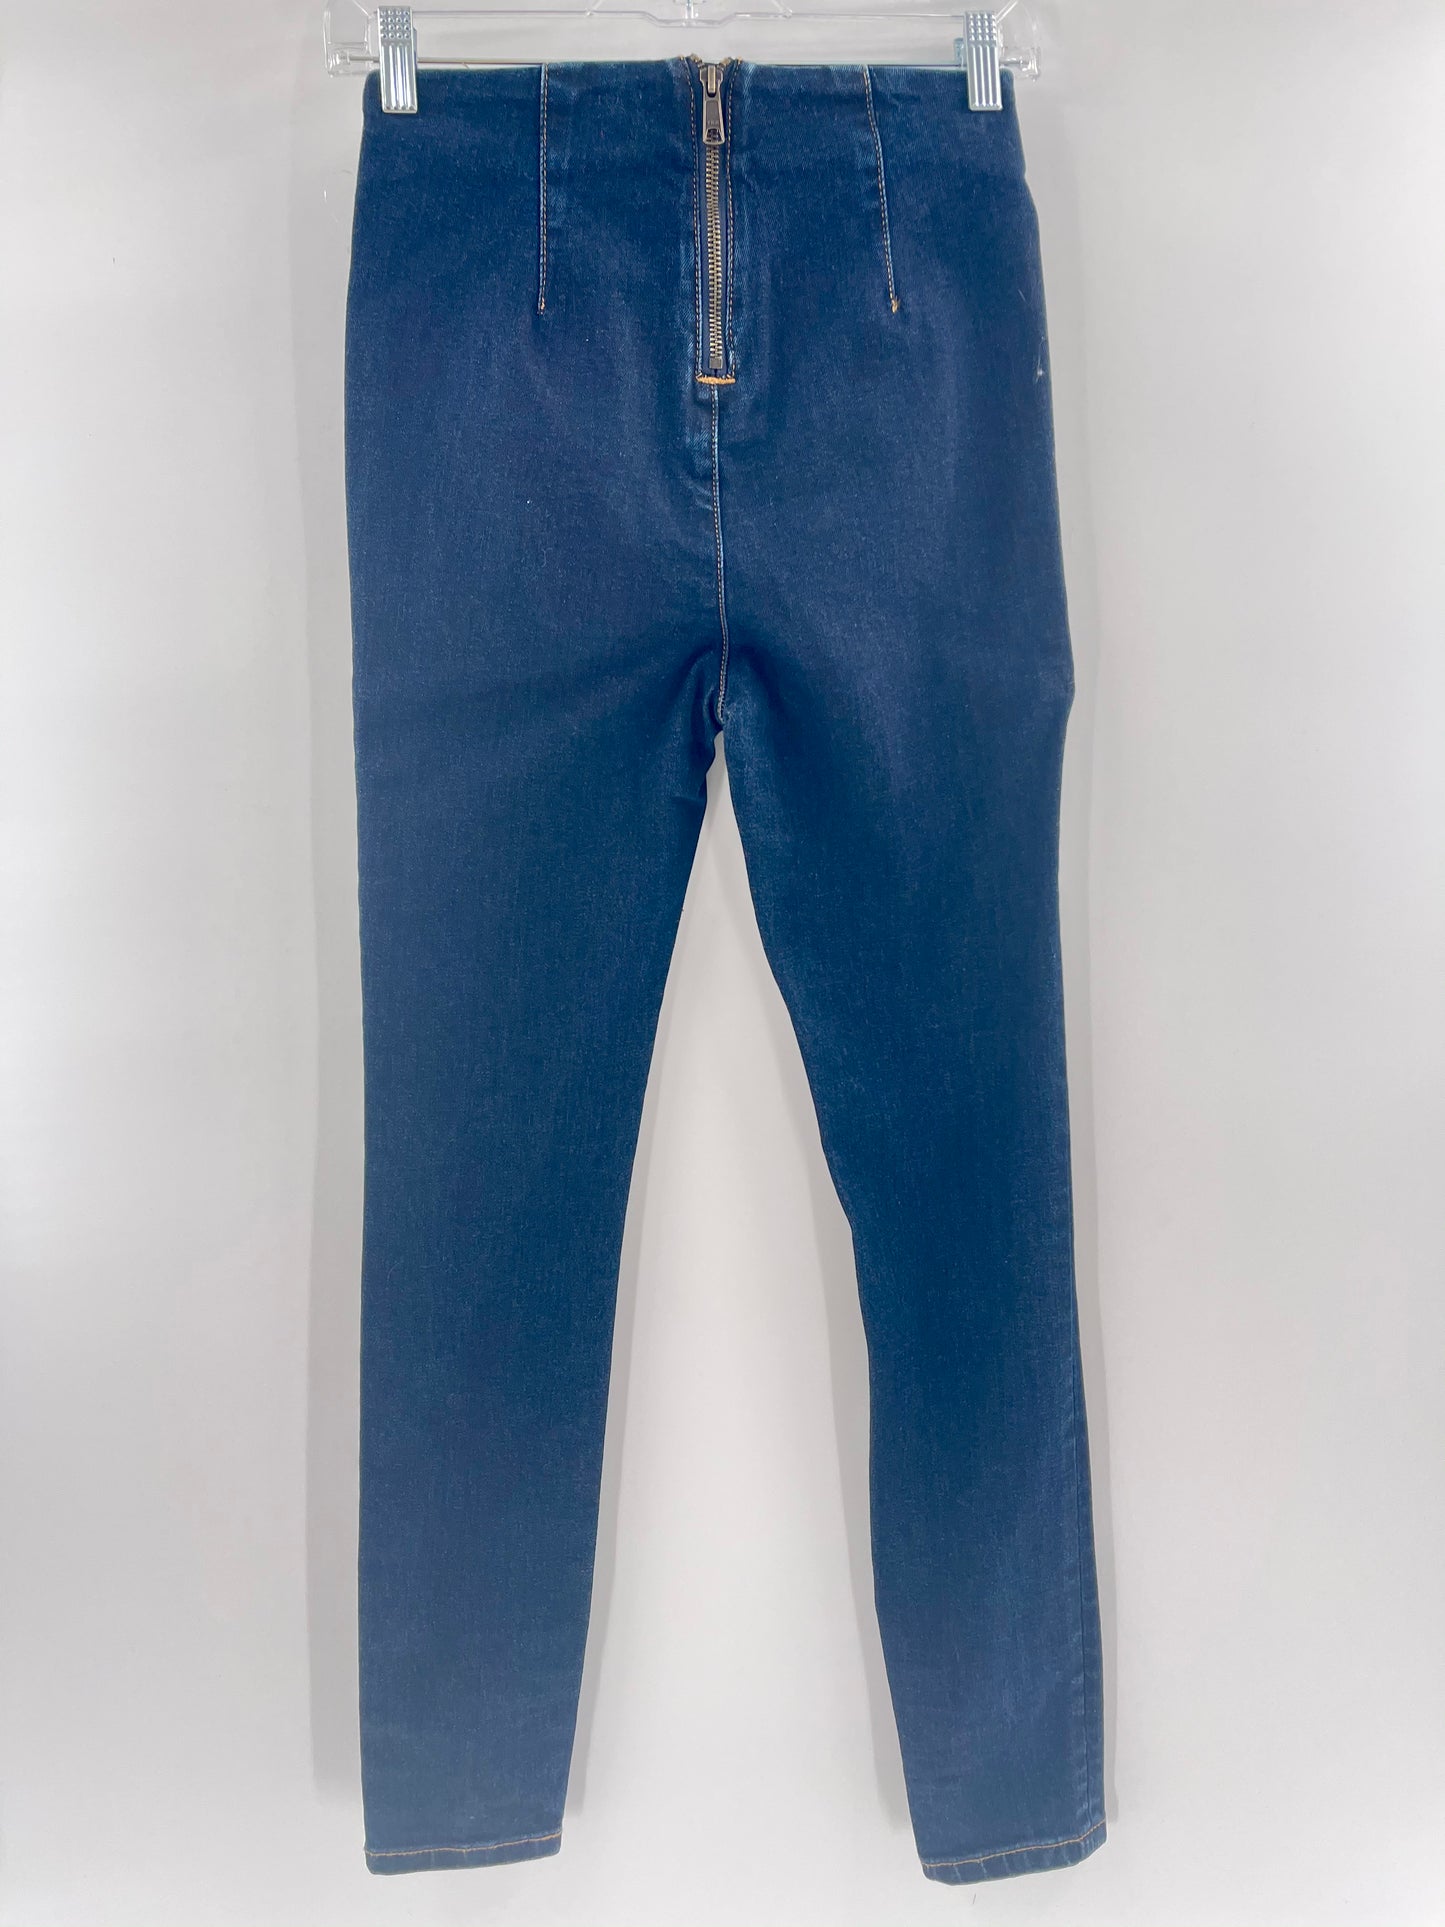 BDG Blue Jeans Zip Up Back (Size 24)